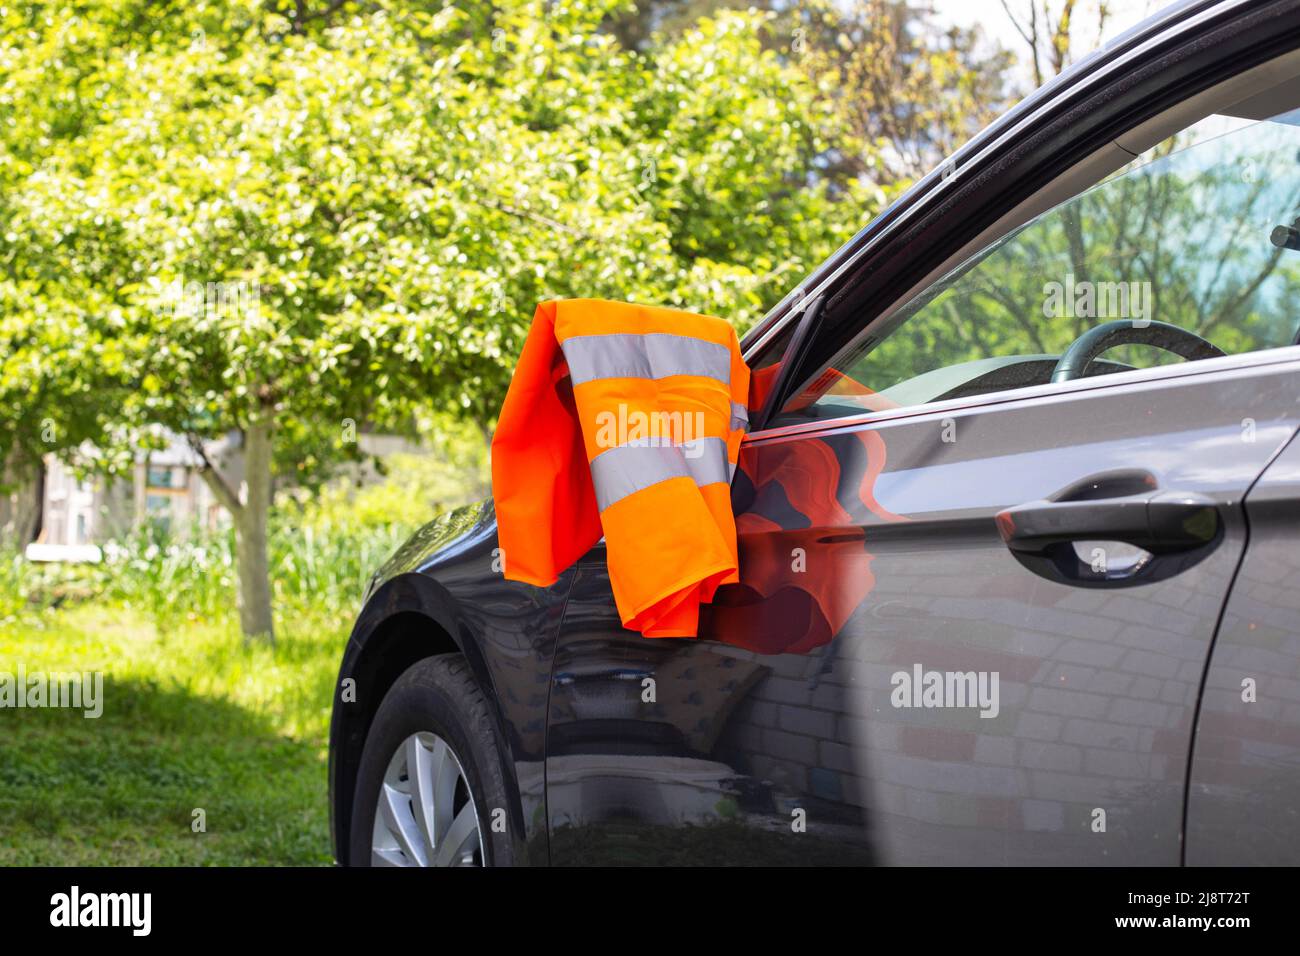 Eine orangefarbene Warnweste hängt am Spiegel eines Pkw. Pannenkonzept,  Pannenhilfe, Probleme Stockfotografie - Alamy